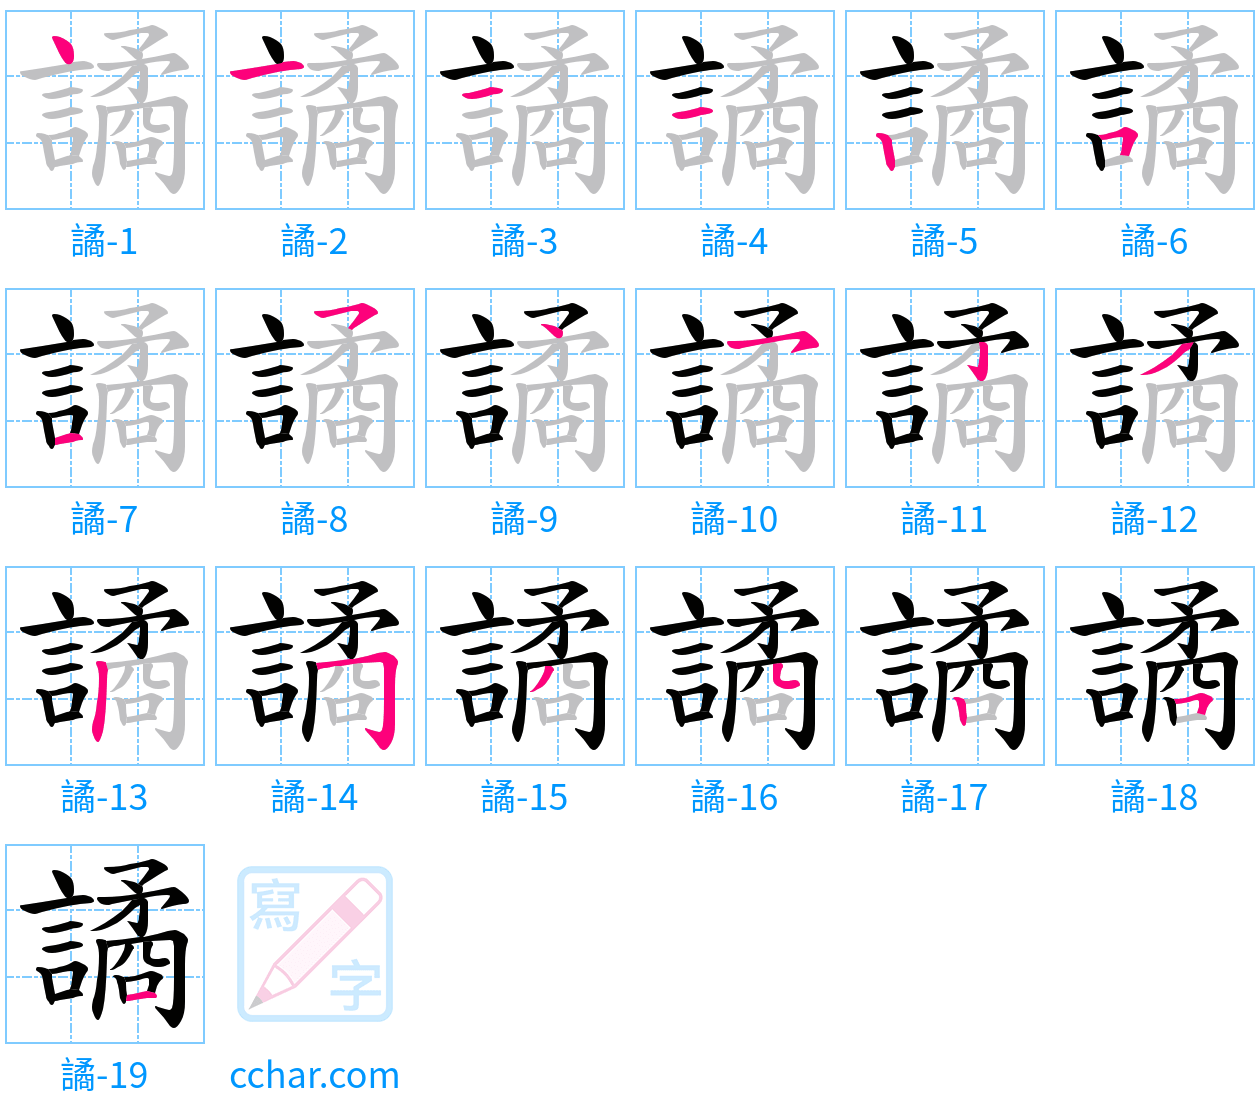 譎 stroke order step-by-step diagram